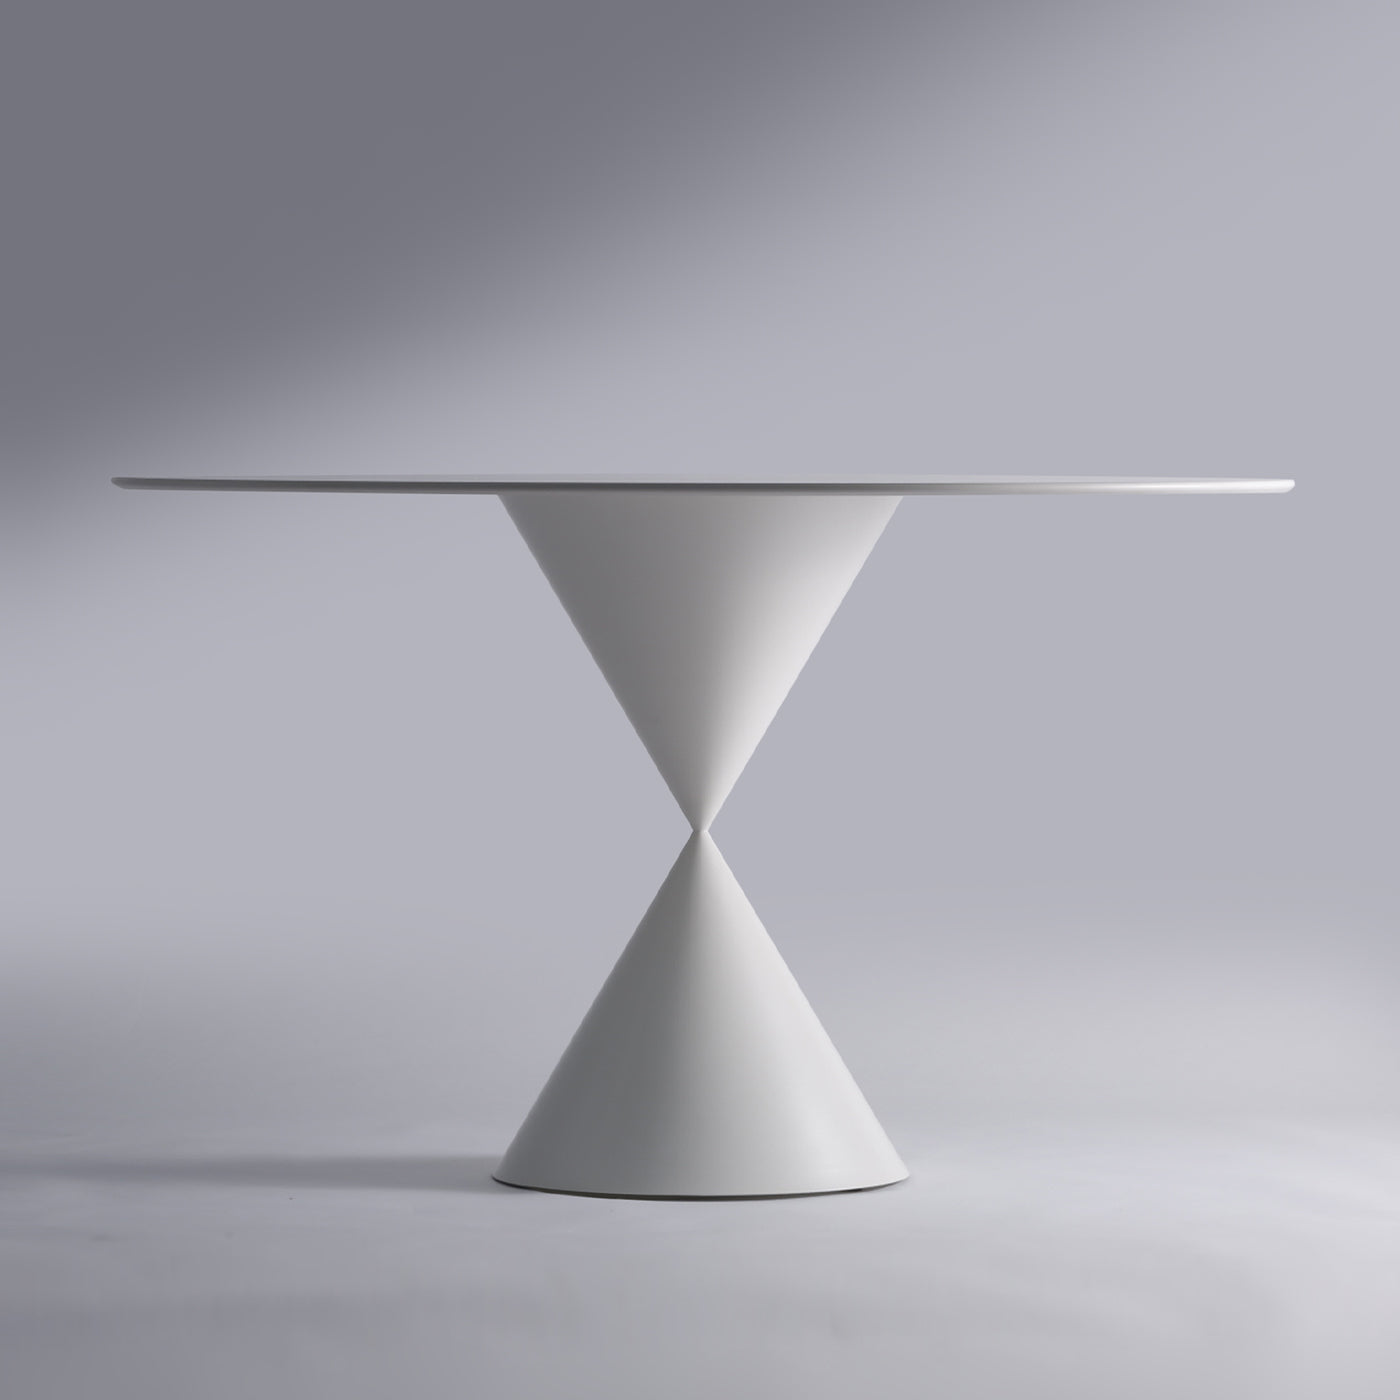 CON-TATTO White Dining Table by Walter De Silva - Alternative view 1